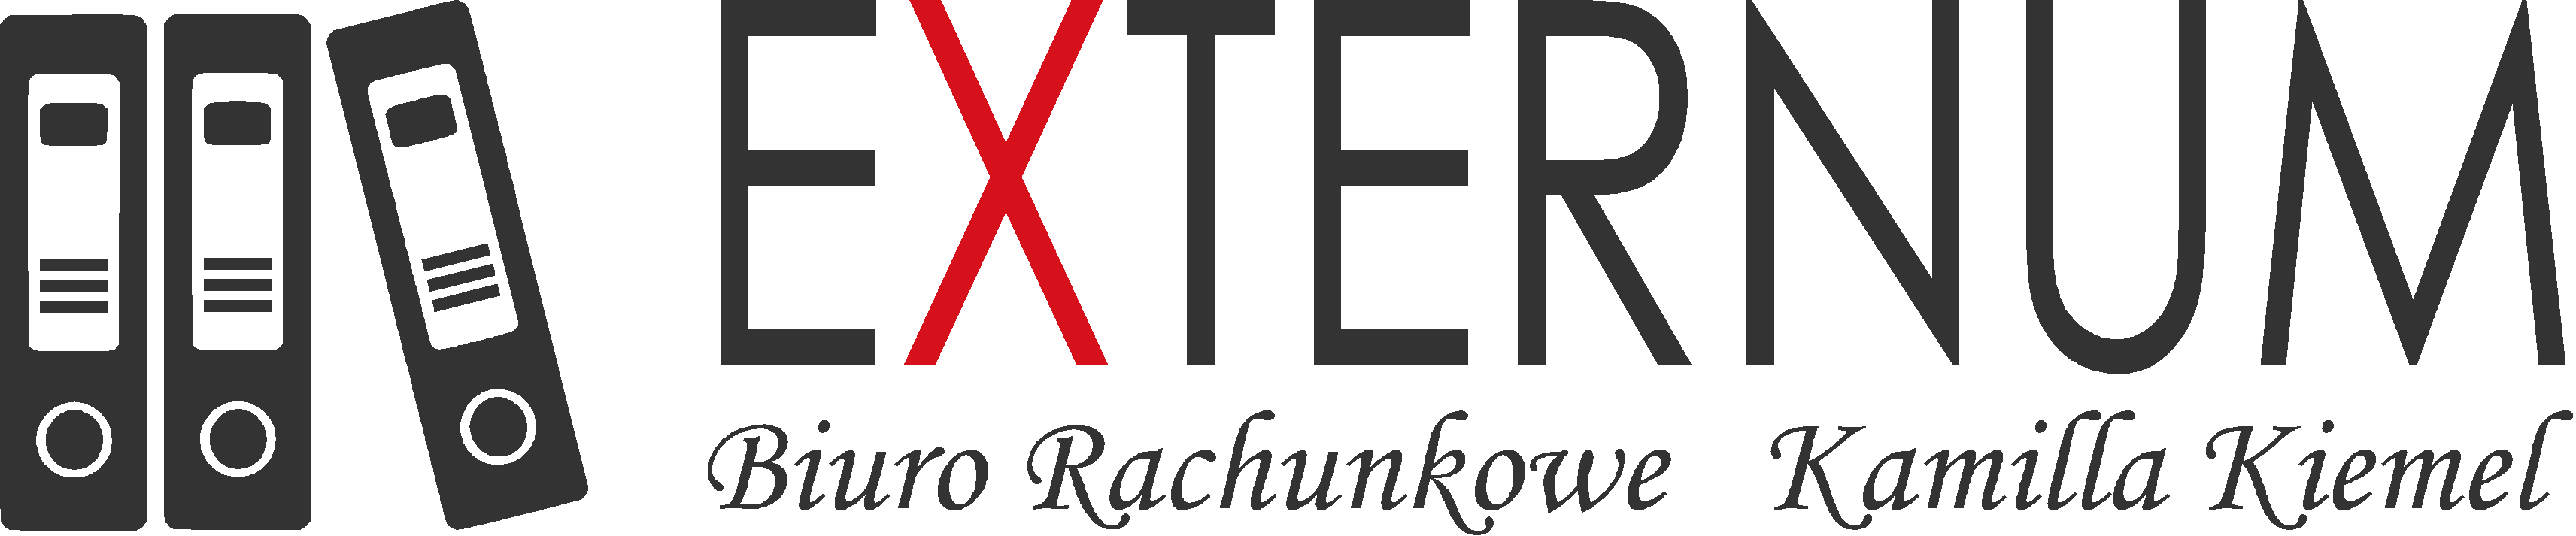 Biuro Rachukowe EXTERNUM